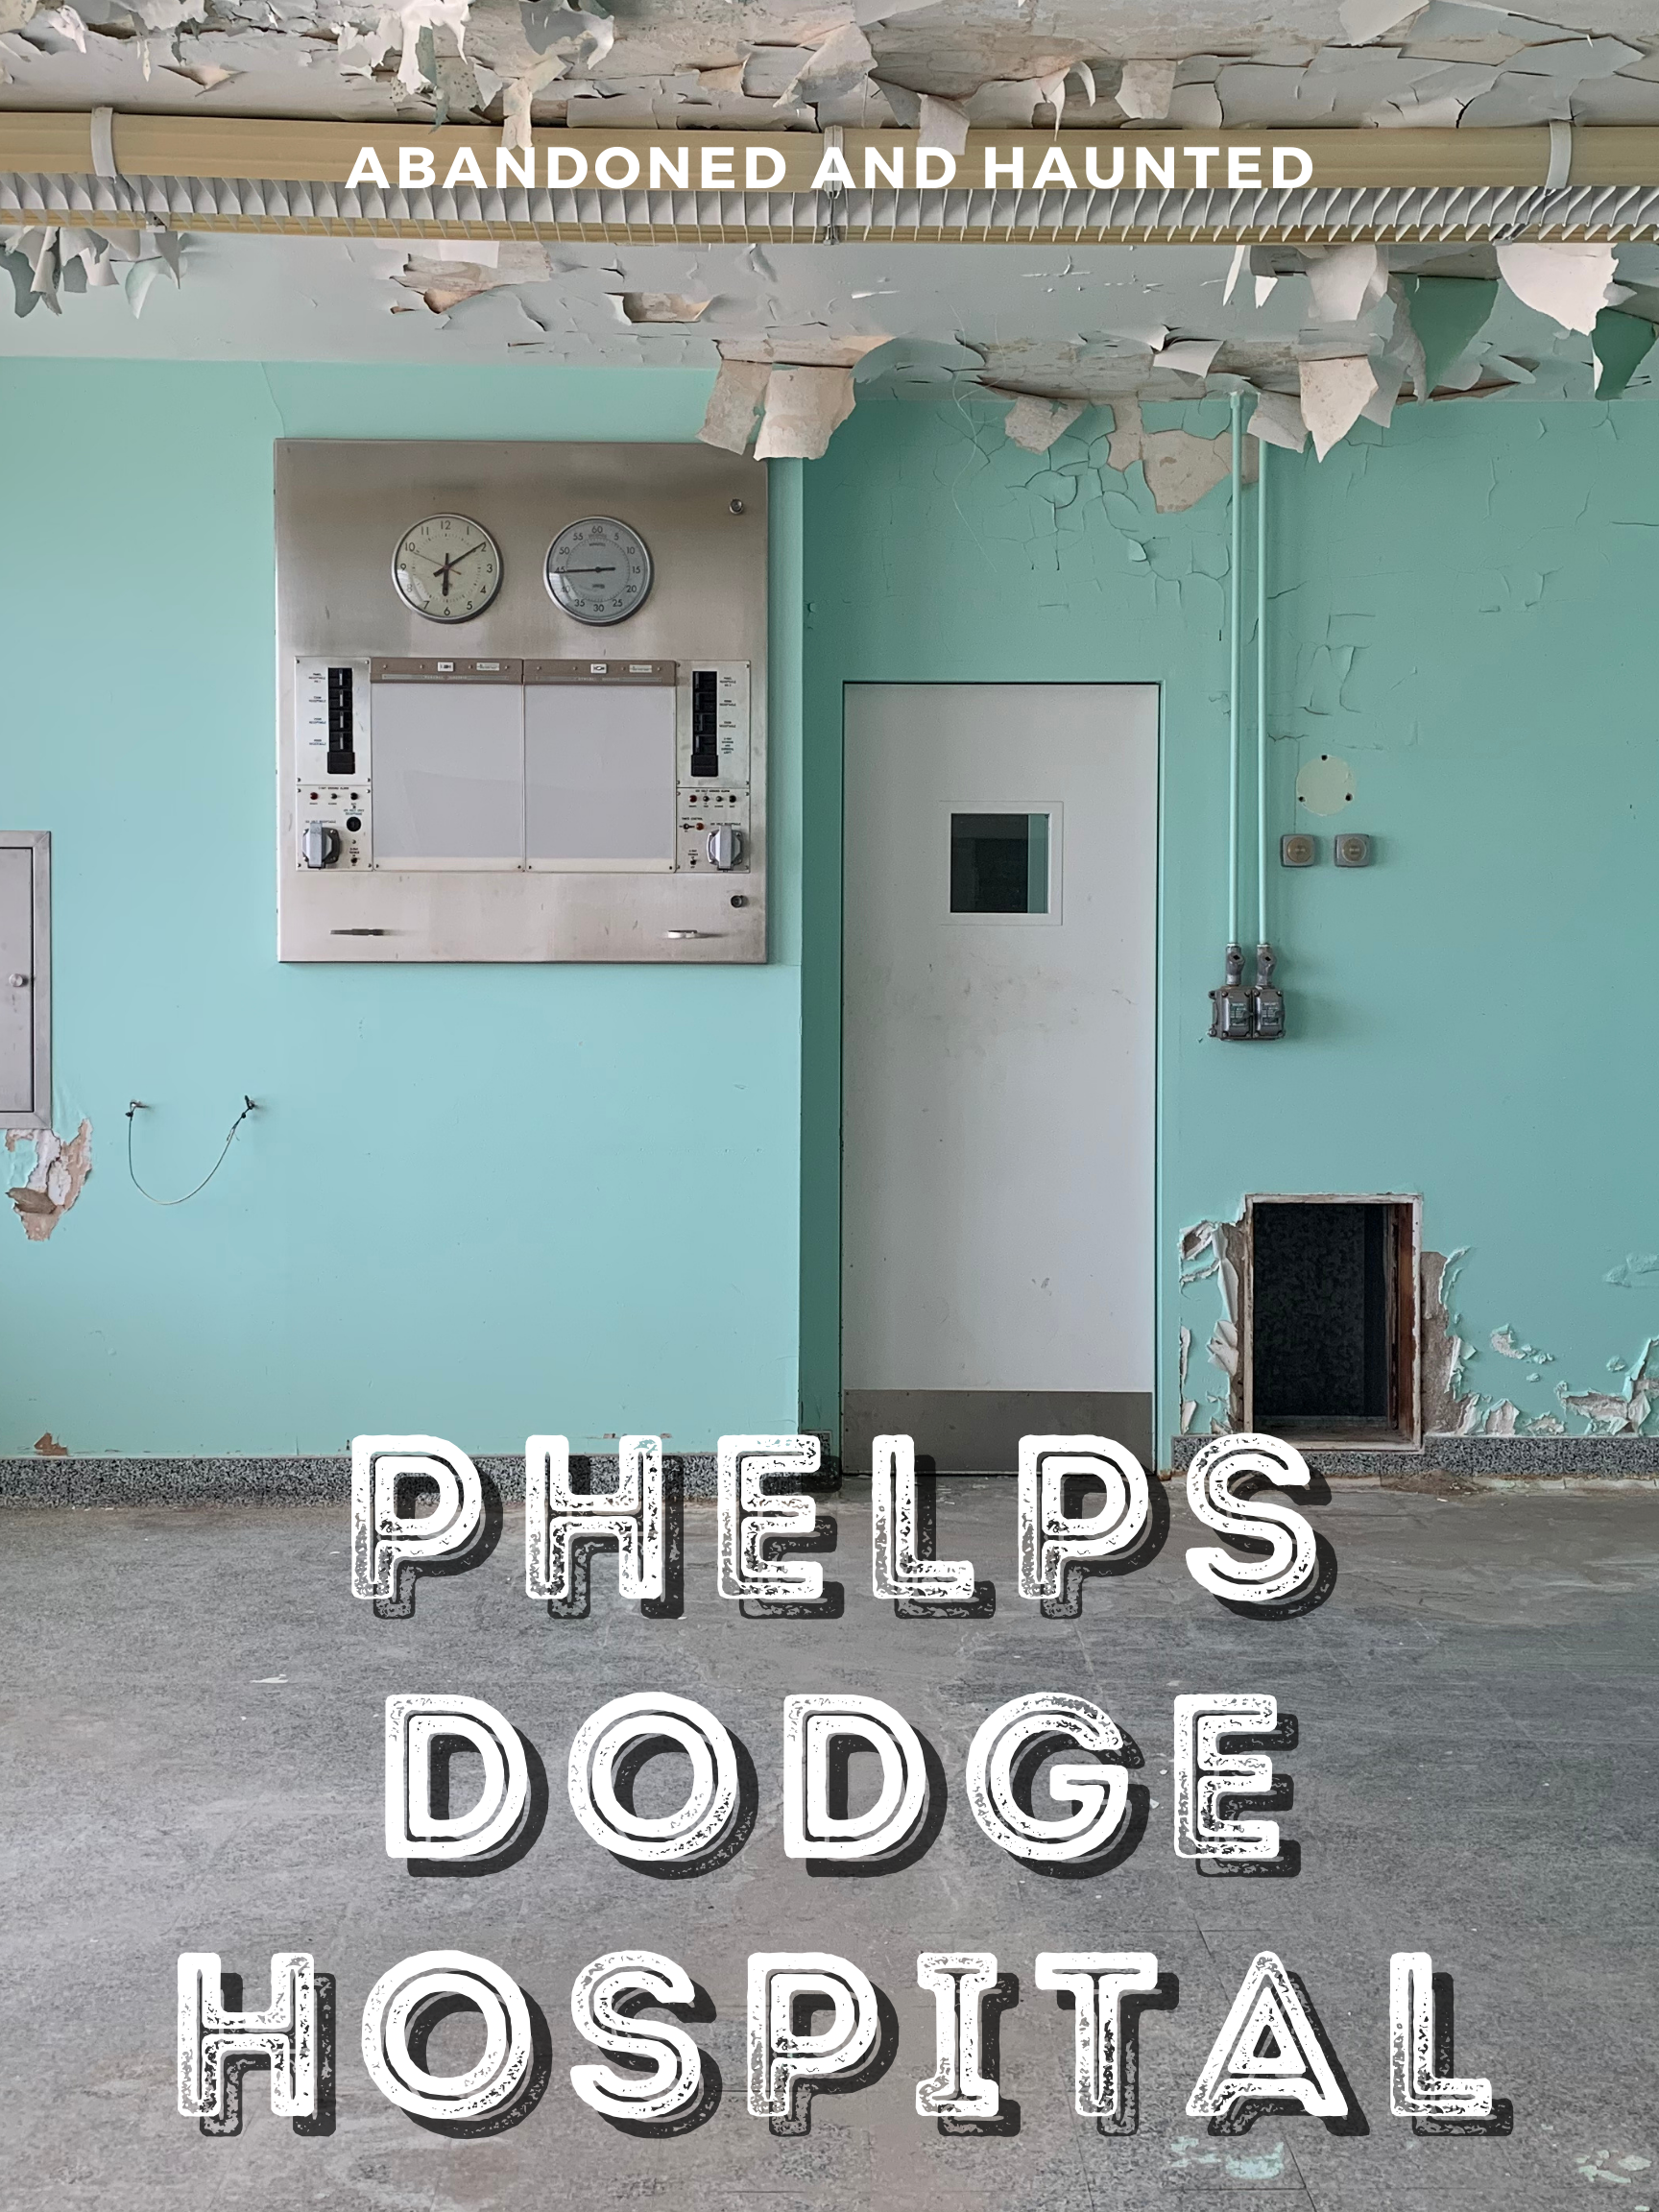 phelps dodge abandoned hospital